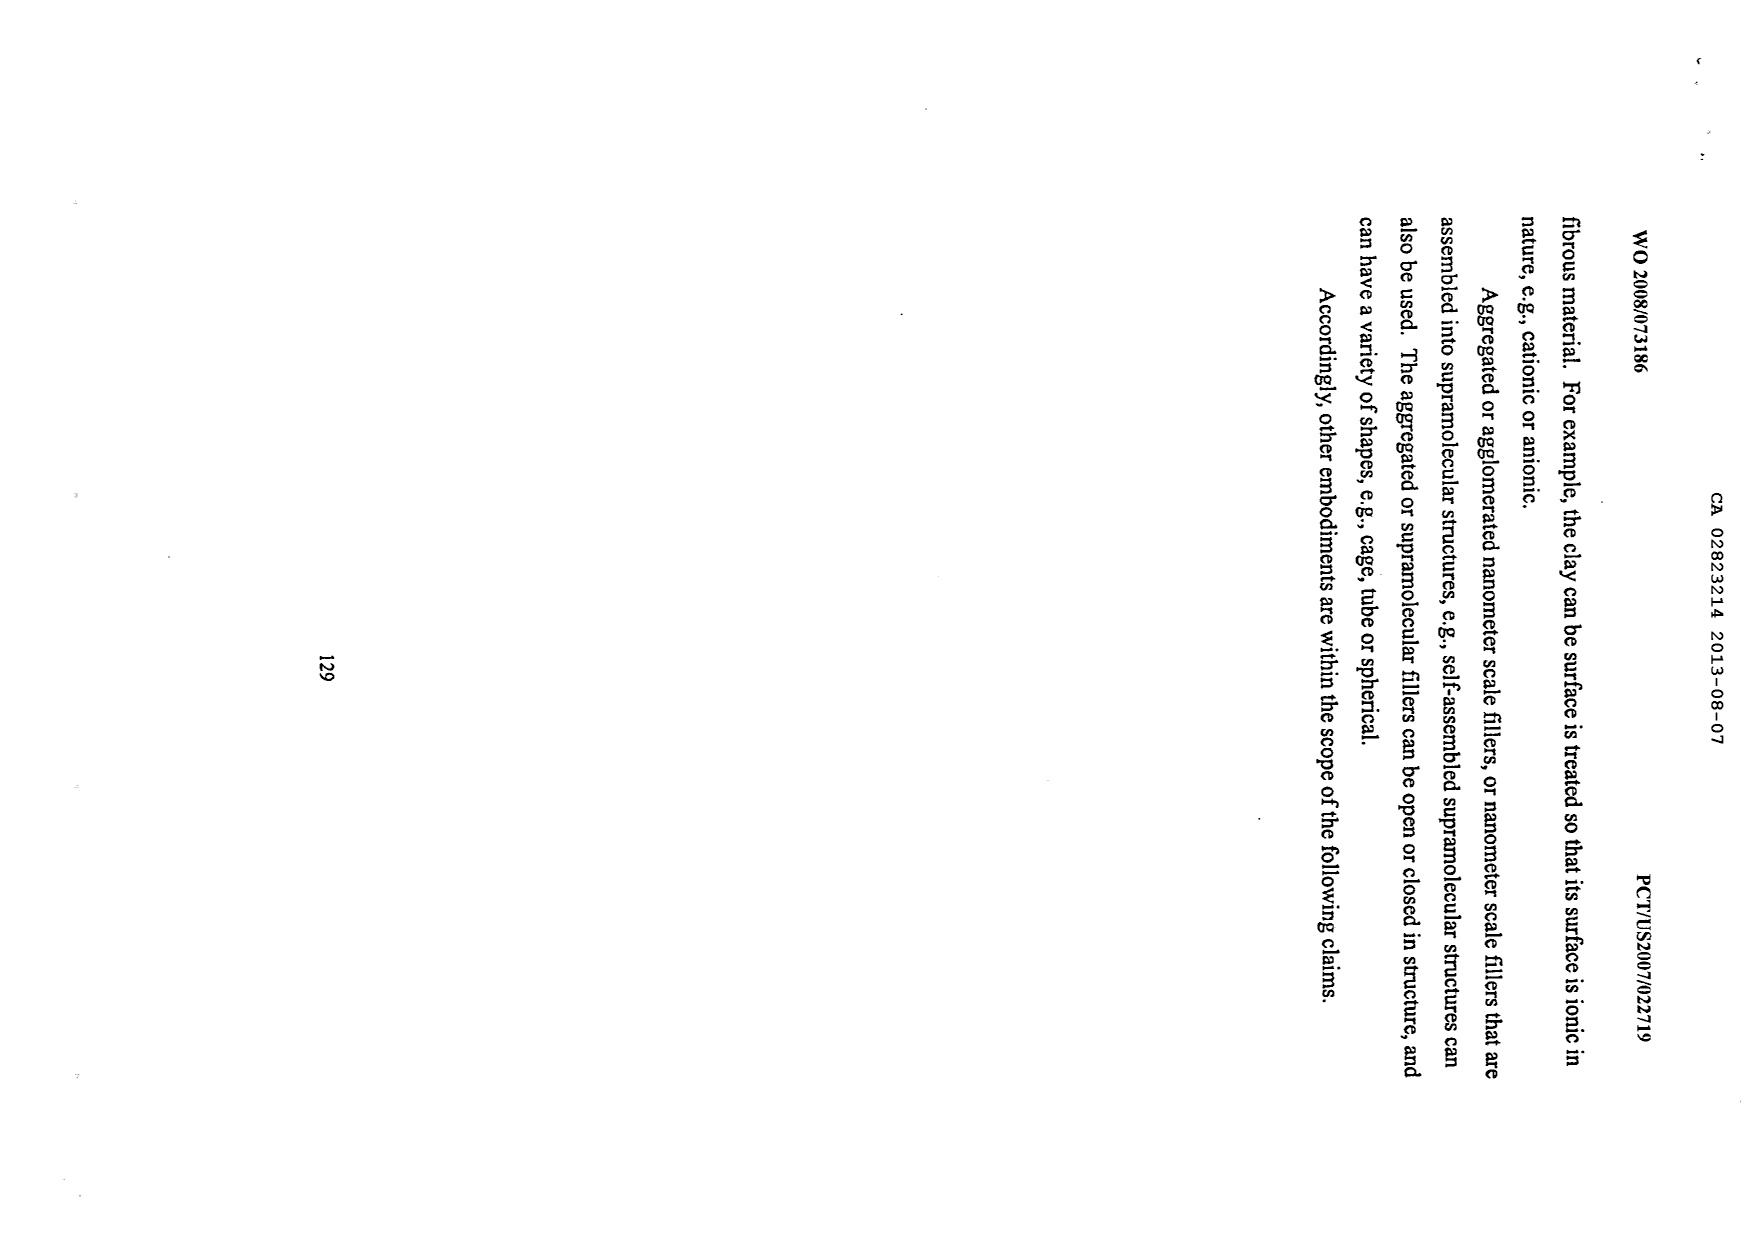 Document de brevet canadien 2823214. Description 20121220. Image 130 de 130